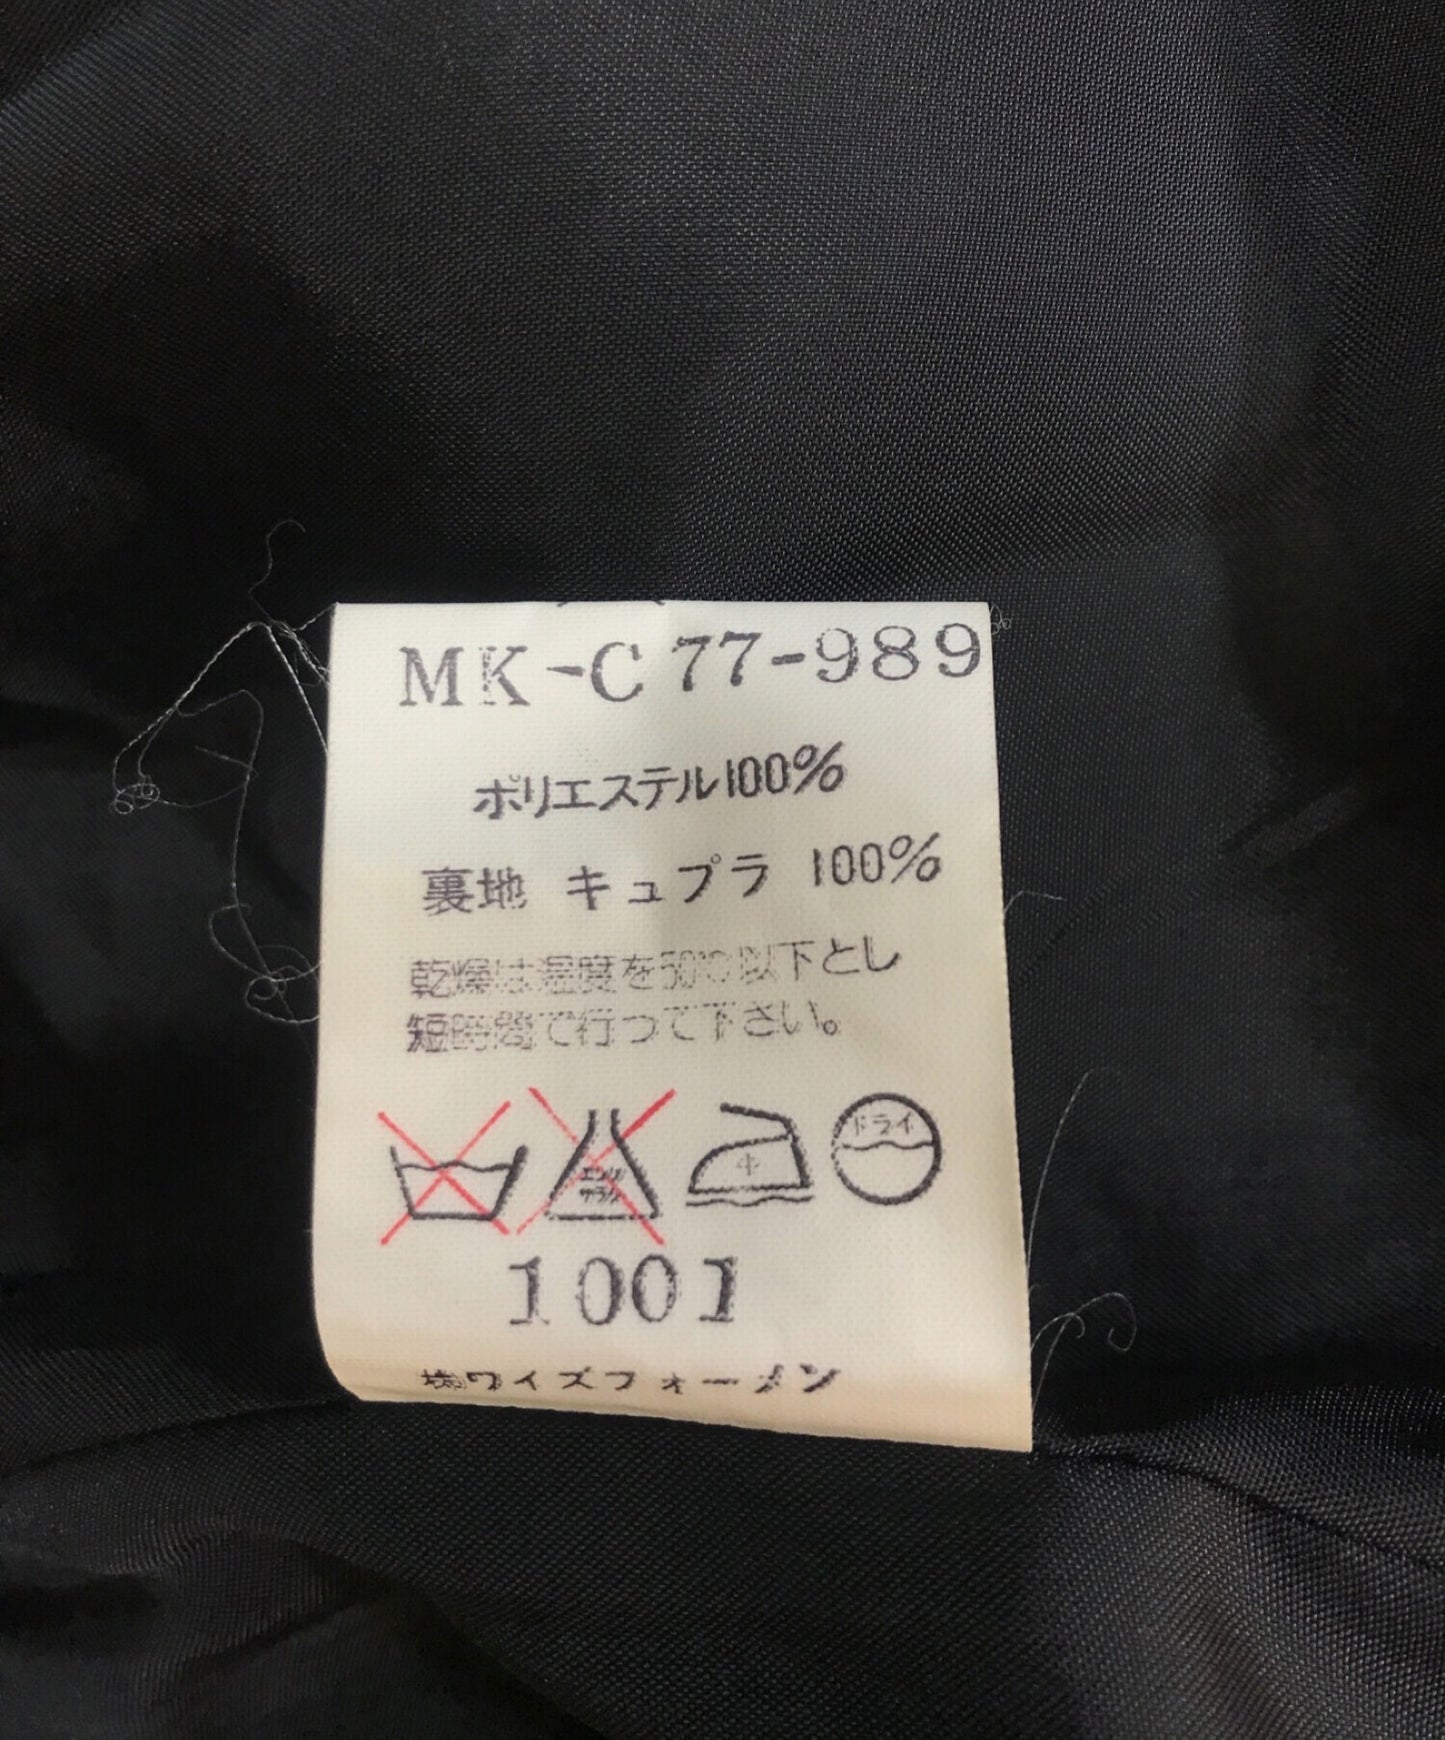 Yohji Yamamoto [二手]員工外套MK-C77-989